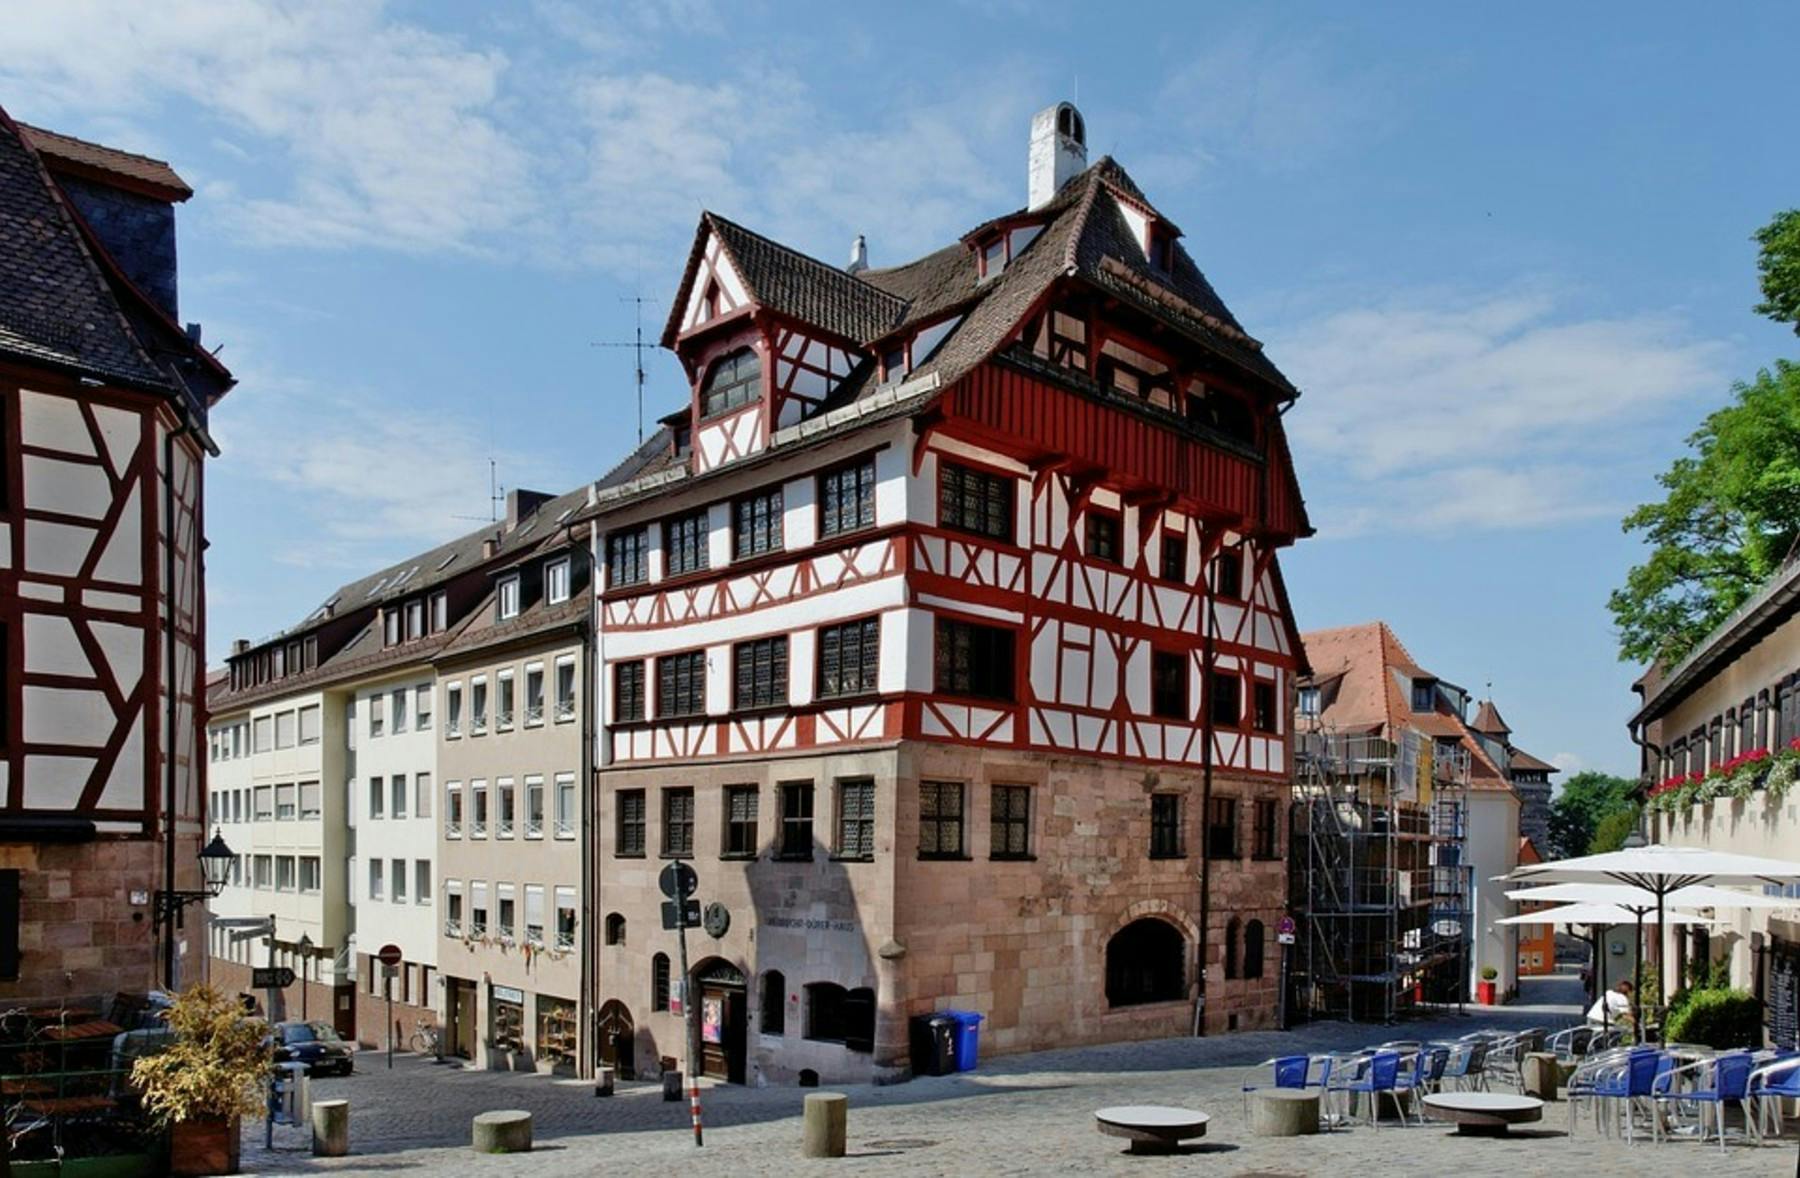 Sehenswürdigkeiten in Nürnberg: Das Albrecht-Dürer-Haus